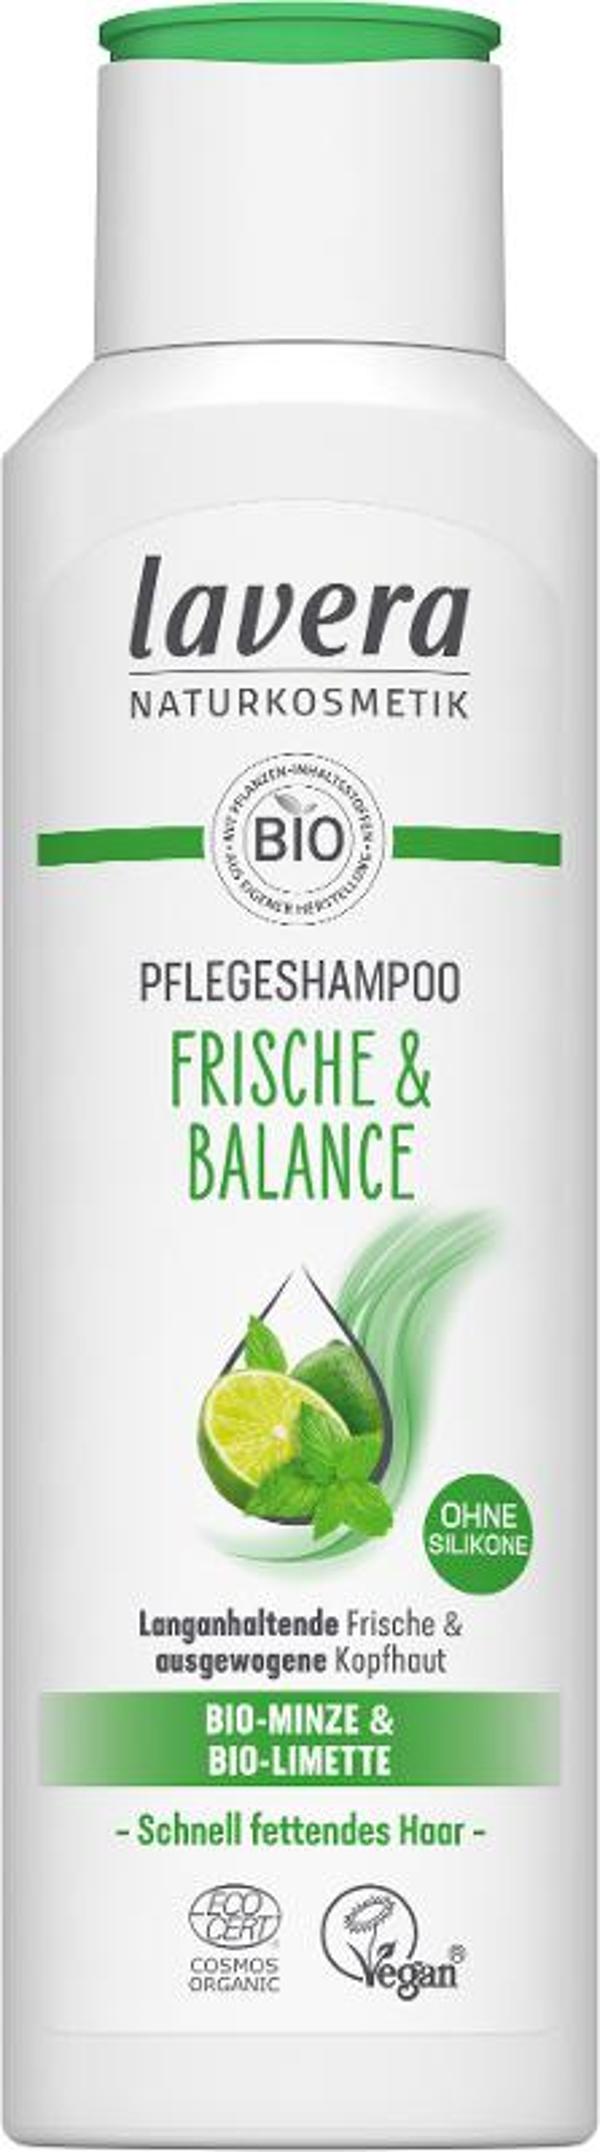 Produktfoto zu Frische & Balance Shampoo